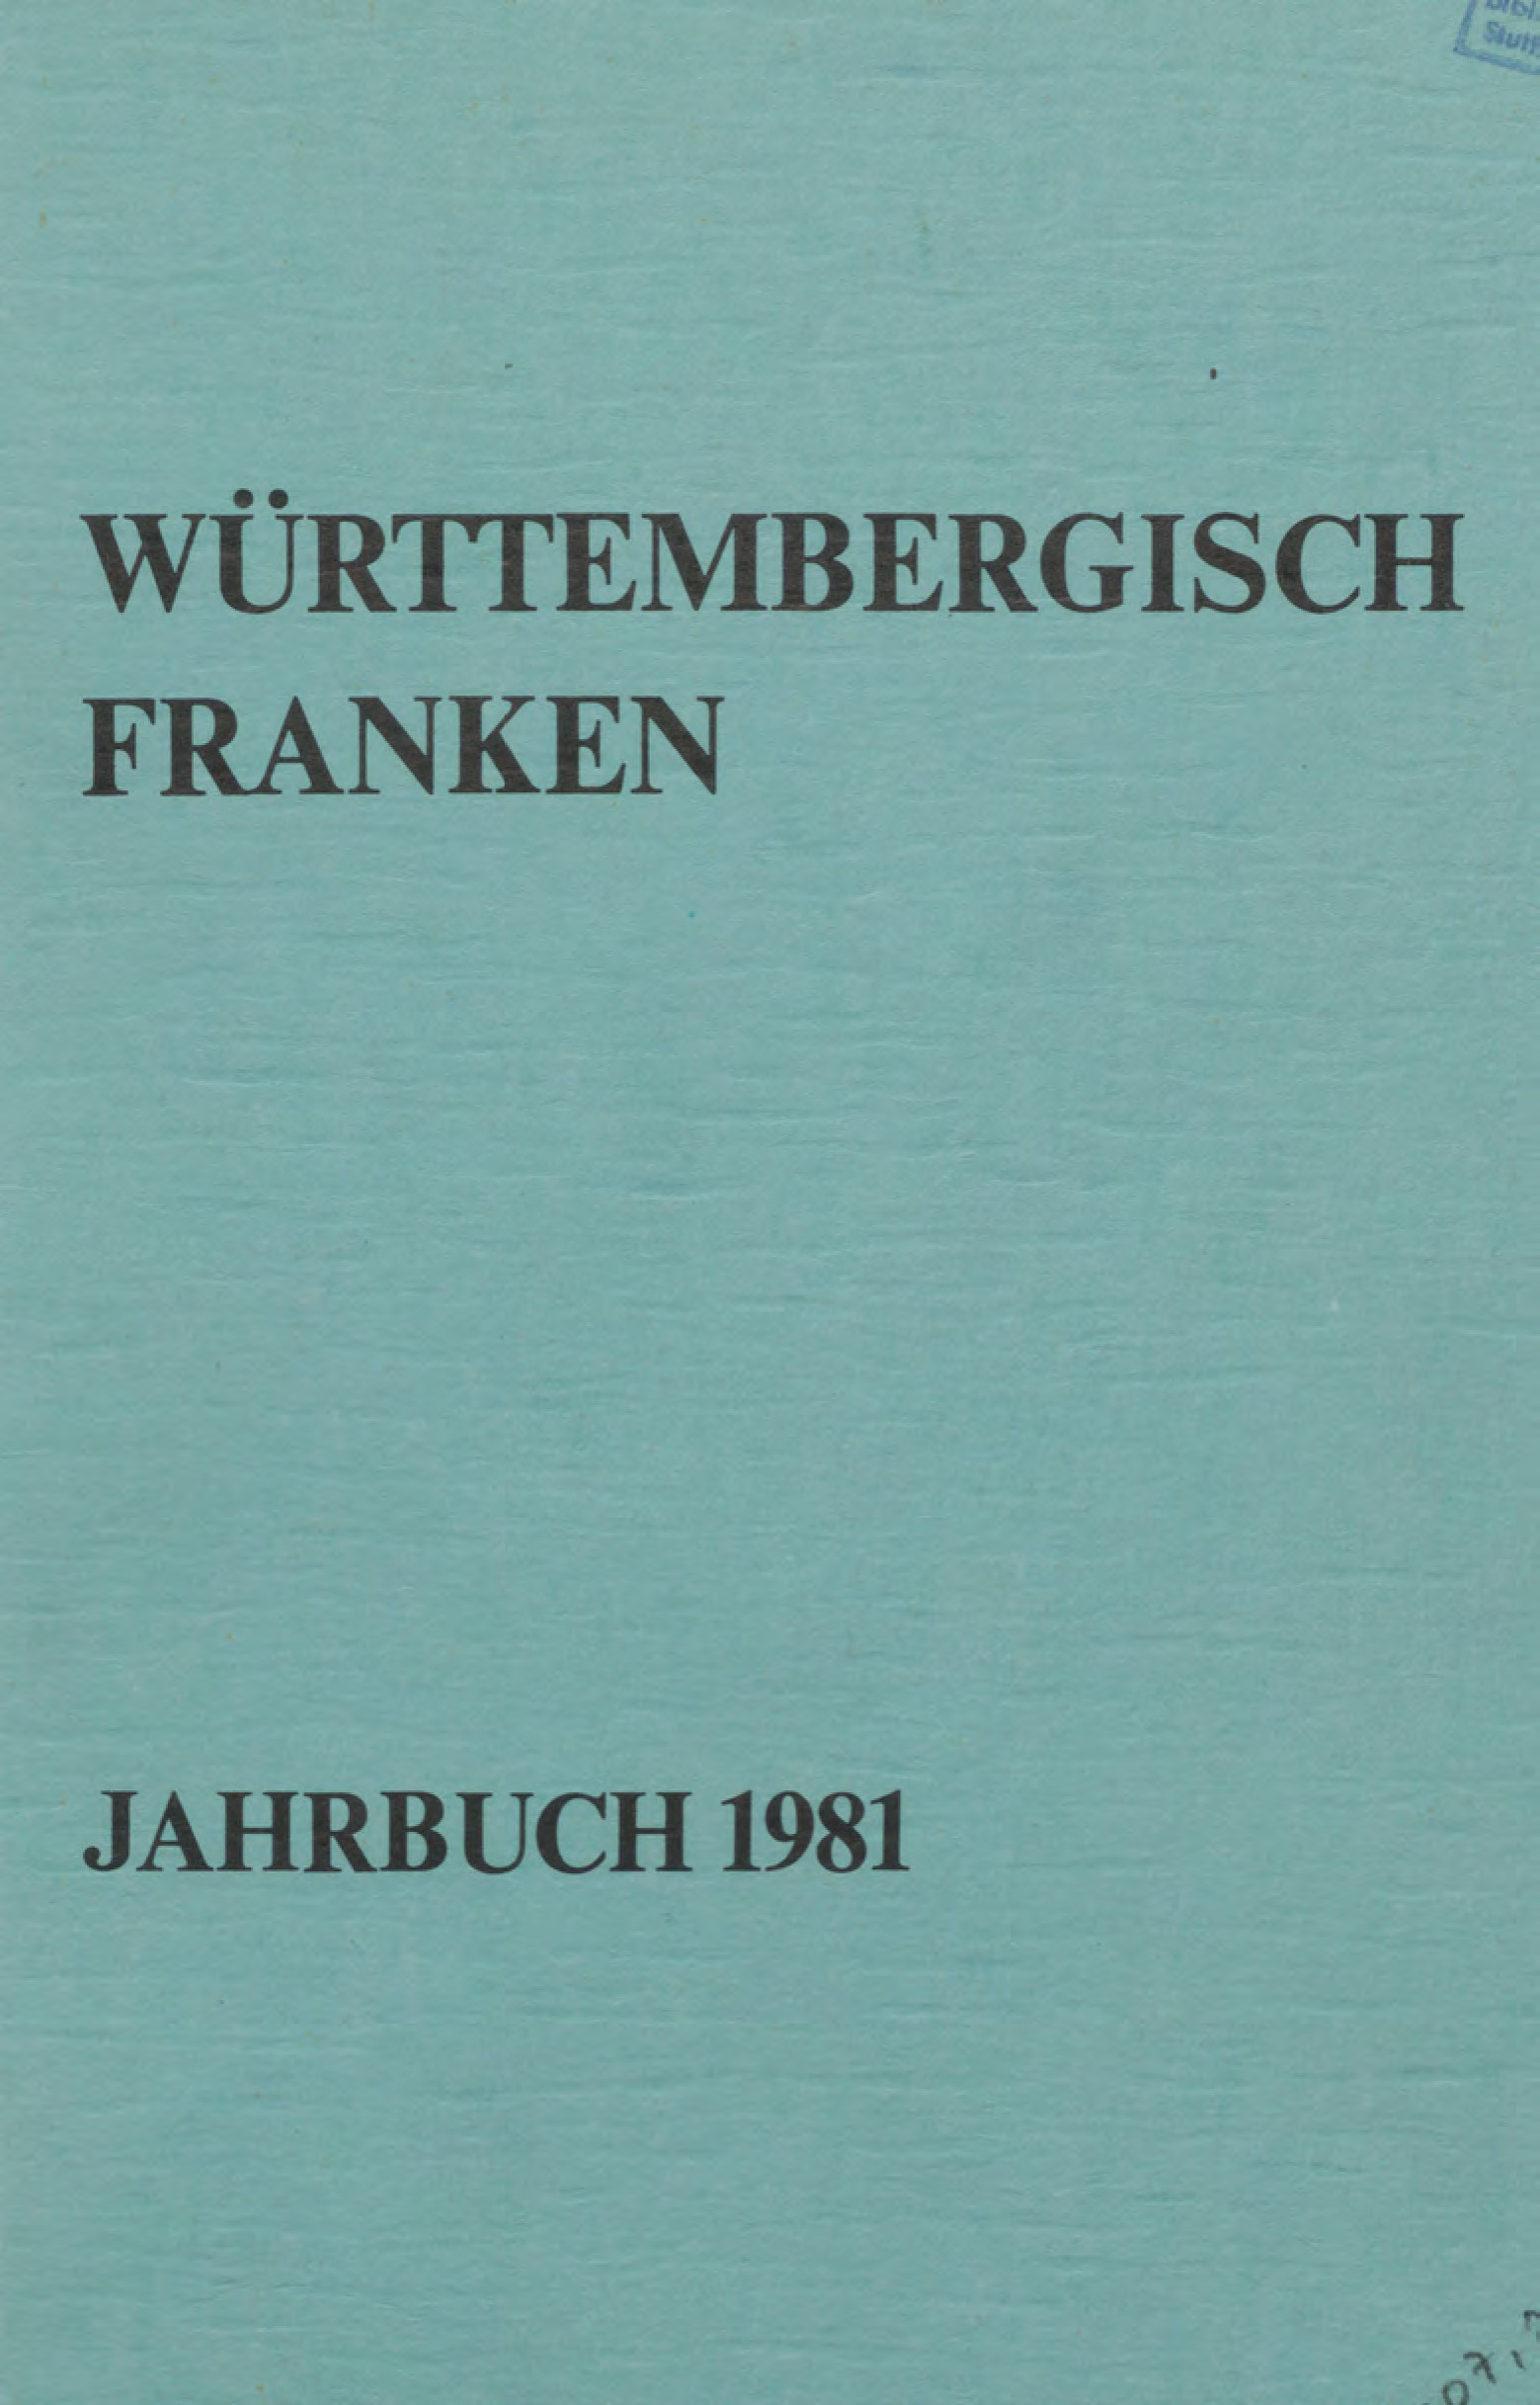                     Ansehen Bd. 65 (1981): Württembergisch Franken
                